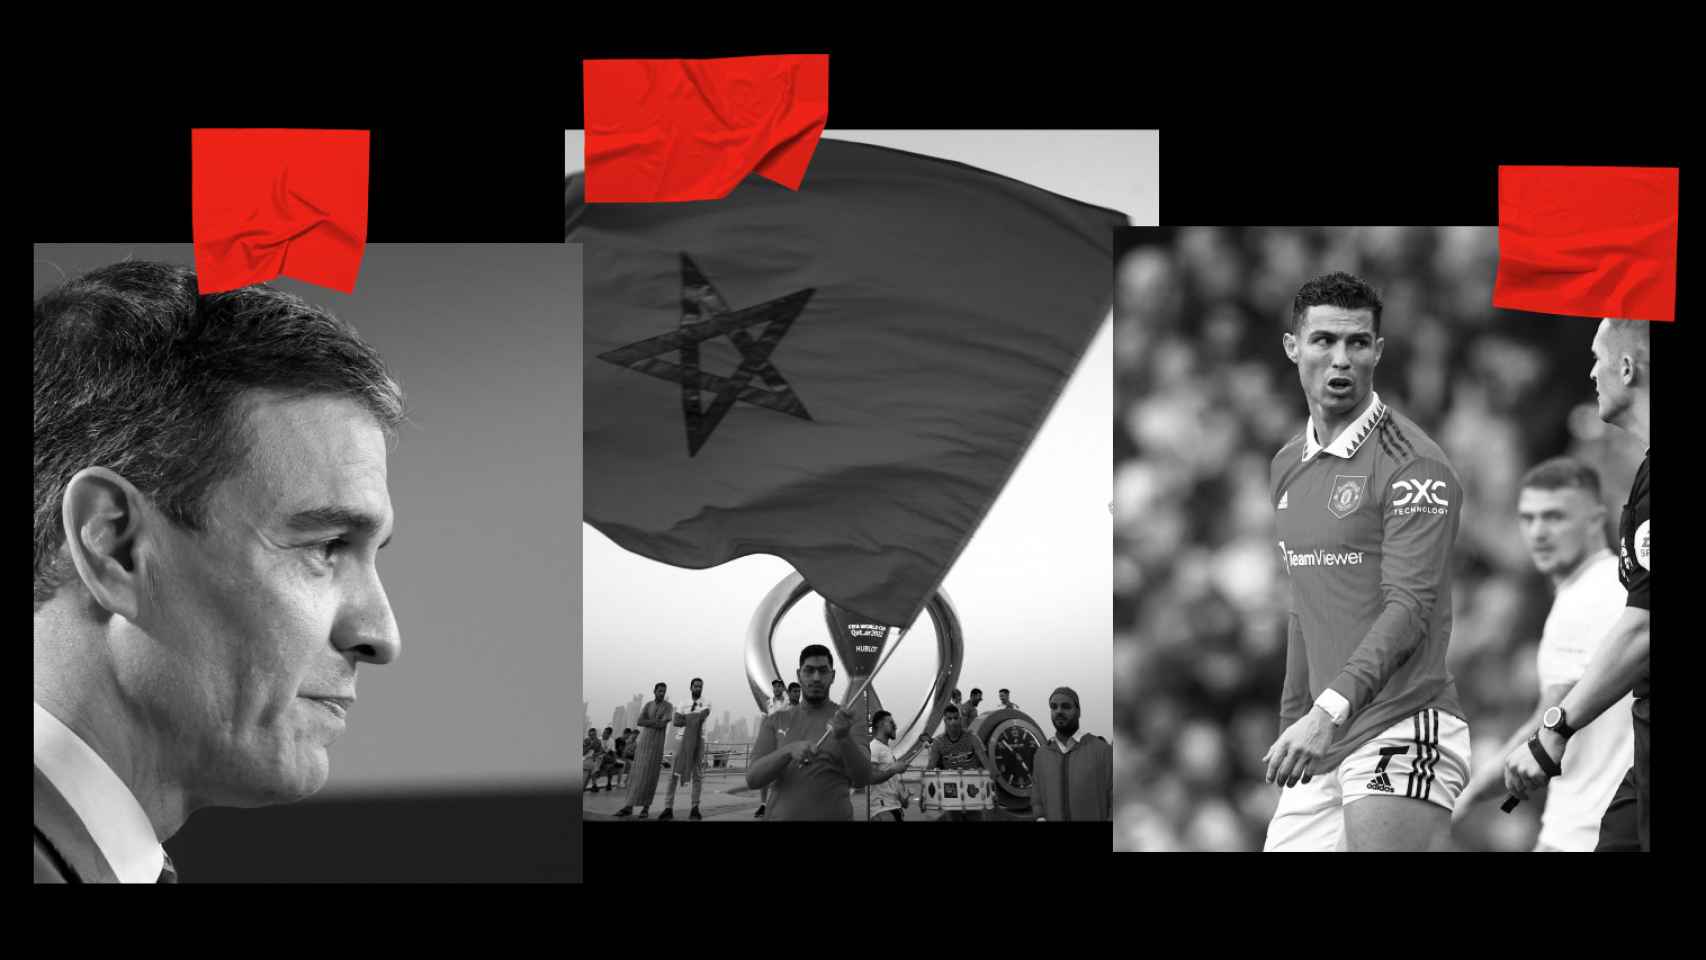 Pedro Sánchez, una bandera de Marruecos y Cristiano Ronaldo.